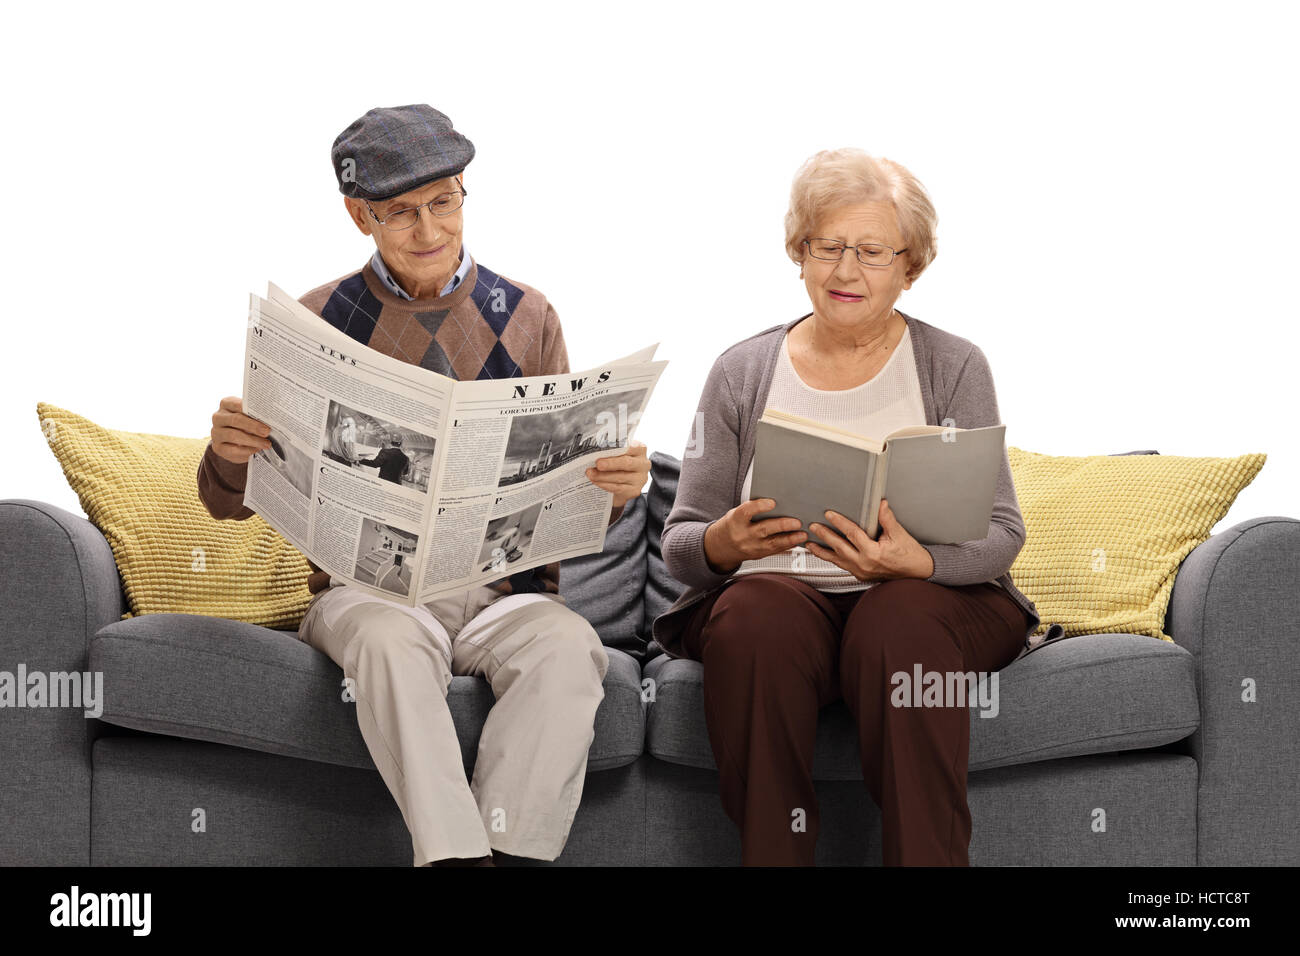 Читать я старший в роде. Чтение пожилых людей. Чтение для пожилых. Пожилой человек читает газету. Пенсионеры с книгами.